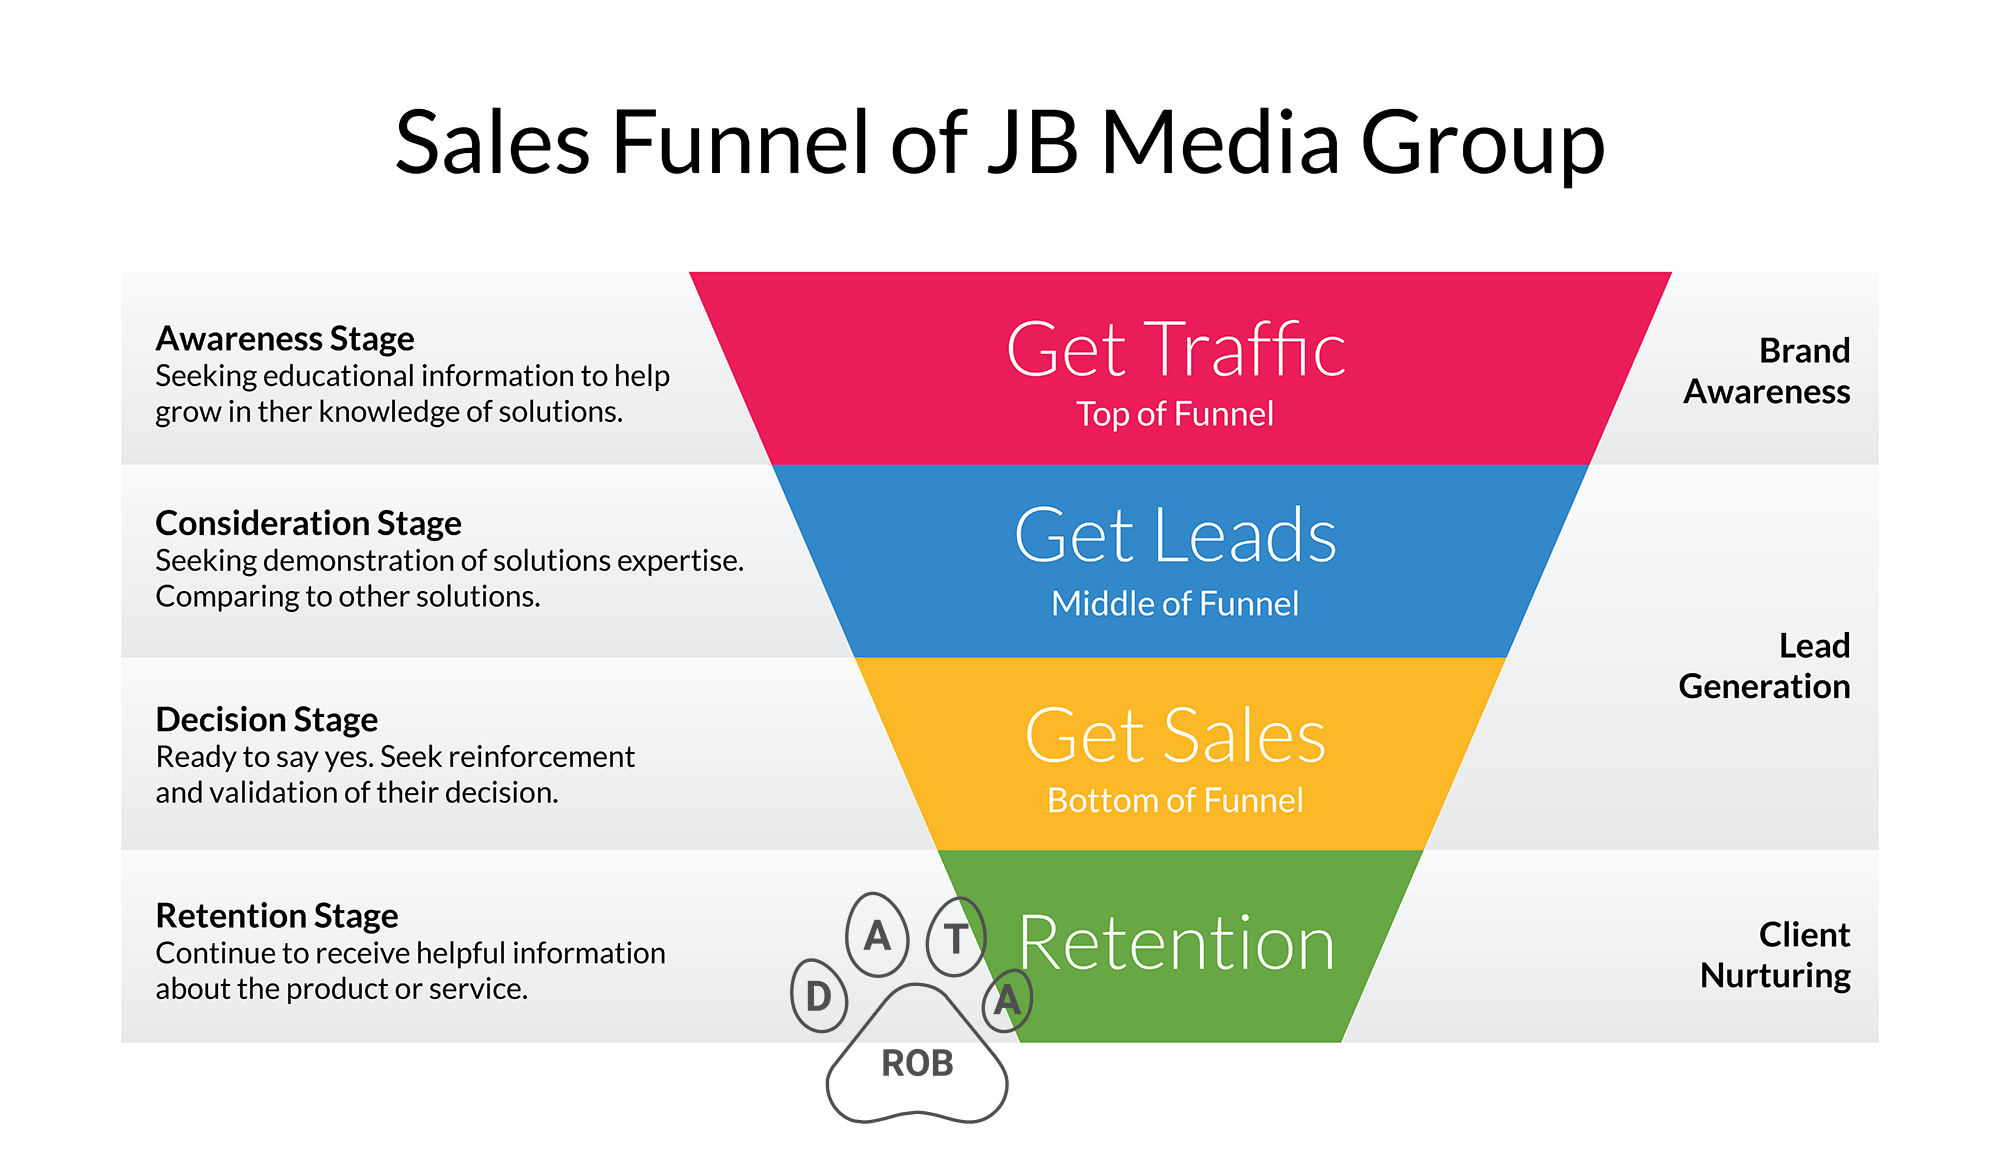 Sales Funnel Model of JB Media Group